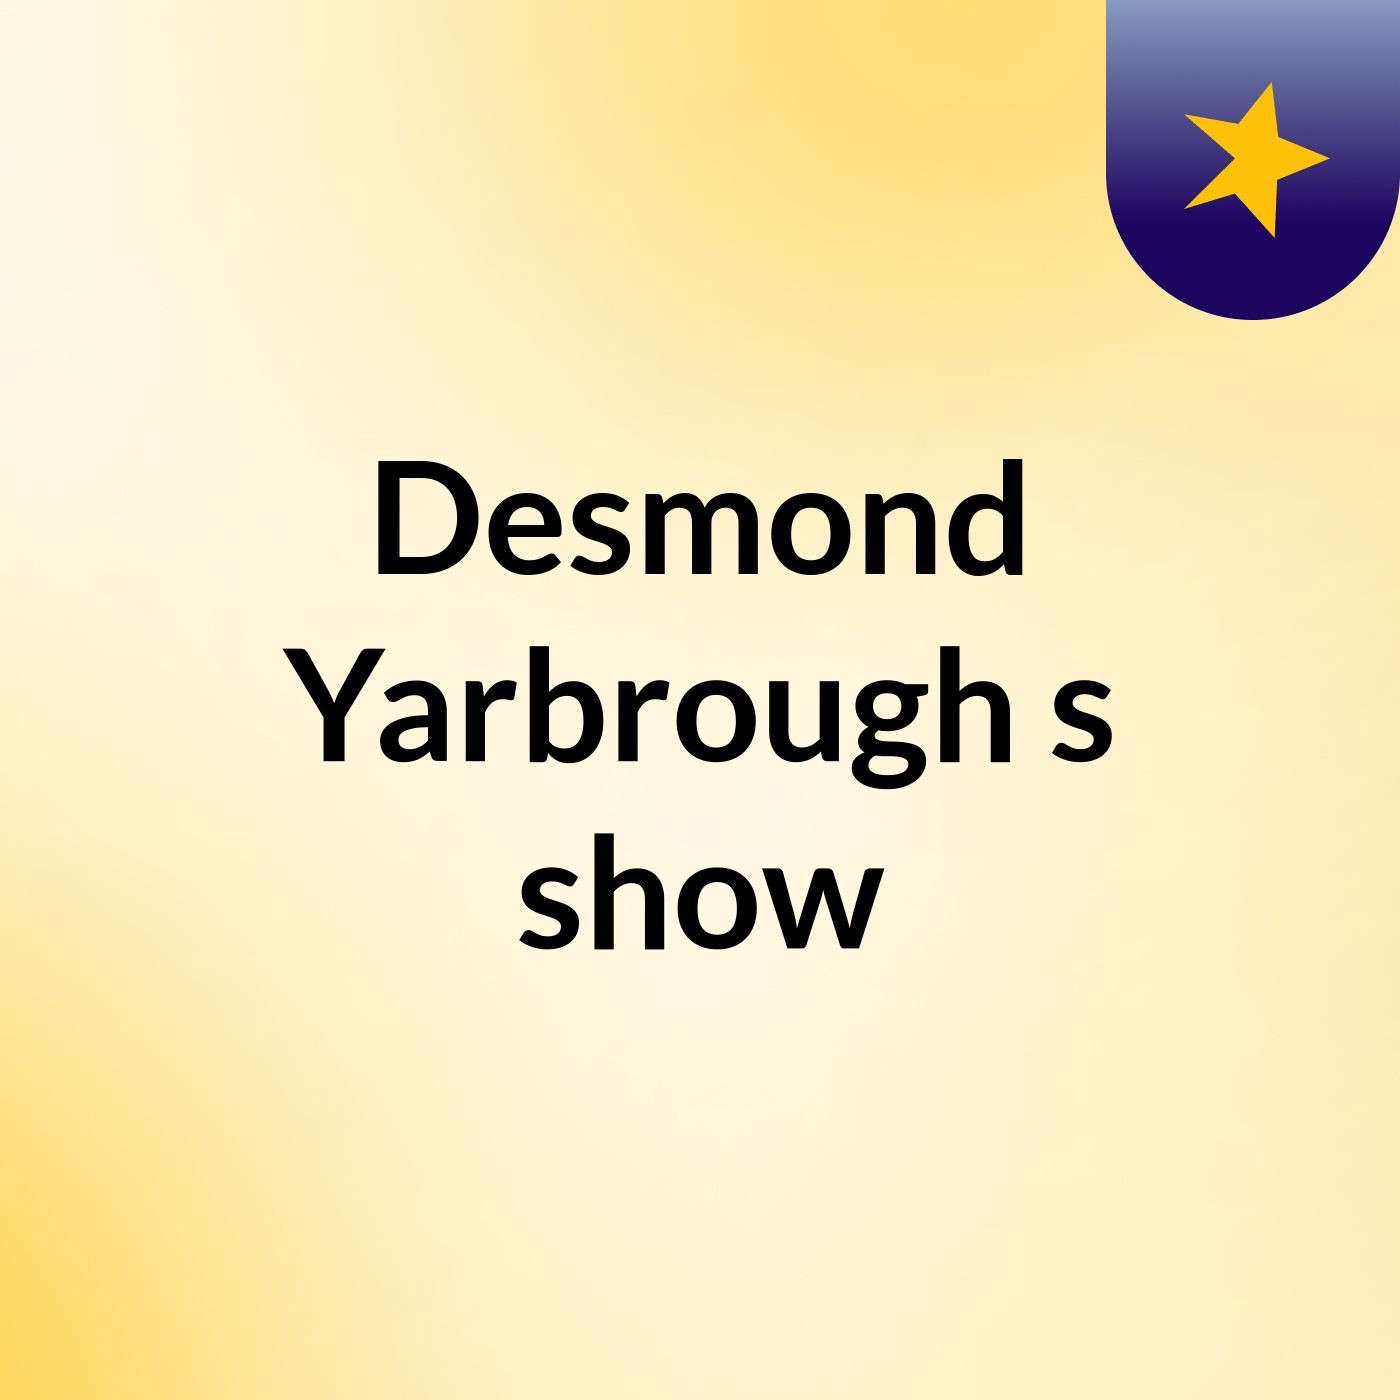 Episode 15 - Desmond Yarbrough's show